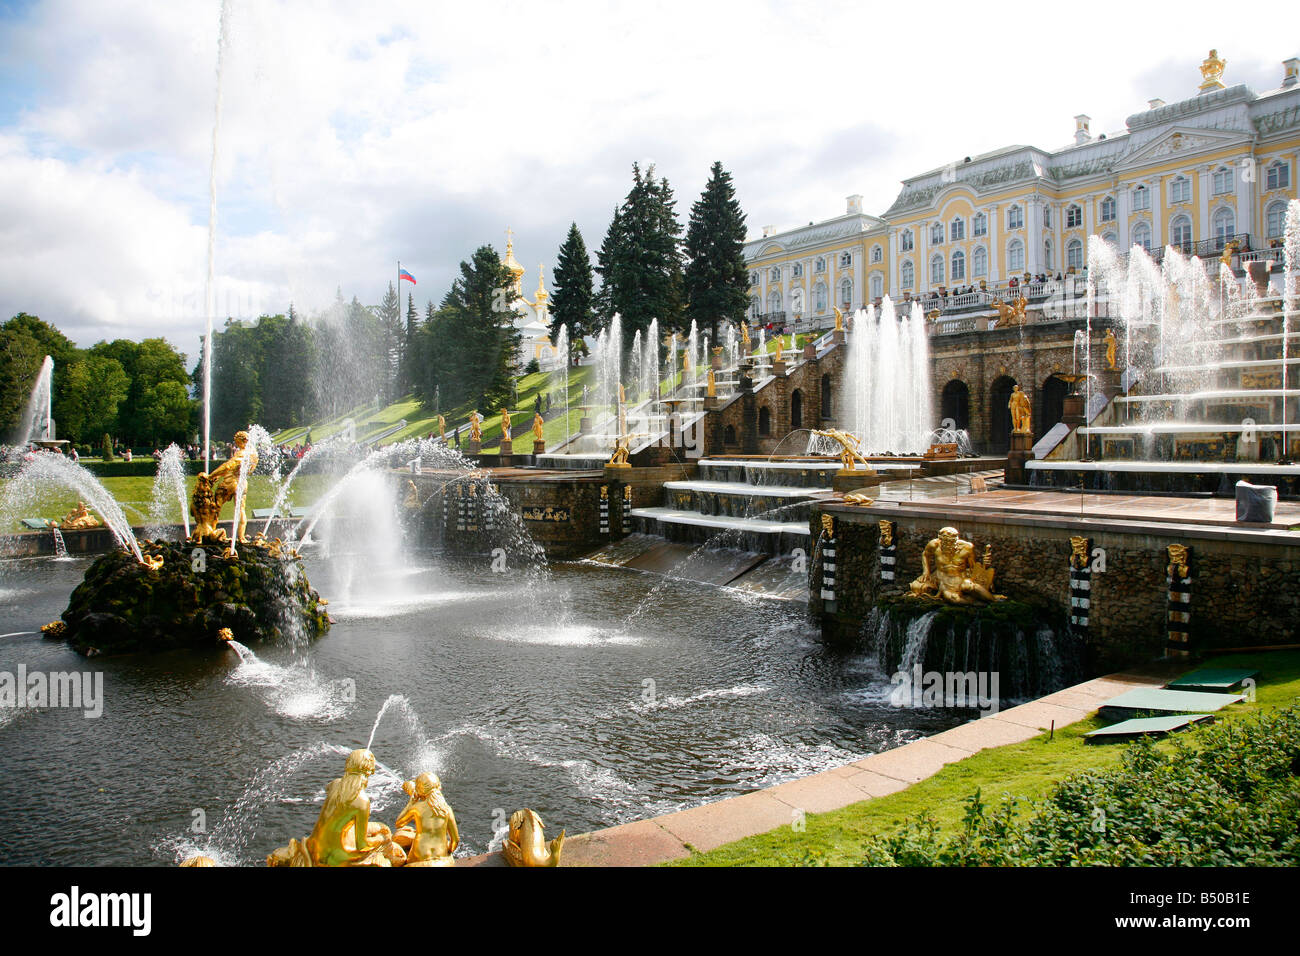 Agosto de 2008 - La Gran Cascada en Palacio Peterhof, San Petersburgo en Rusia Foto de stock